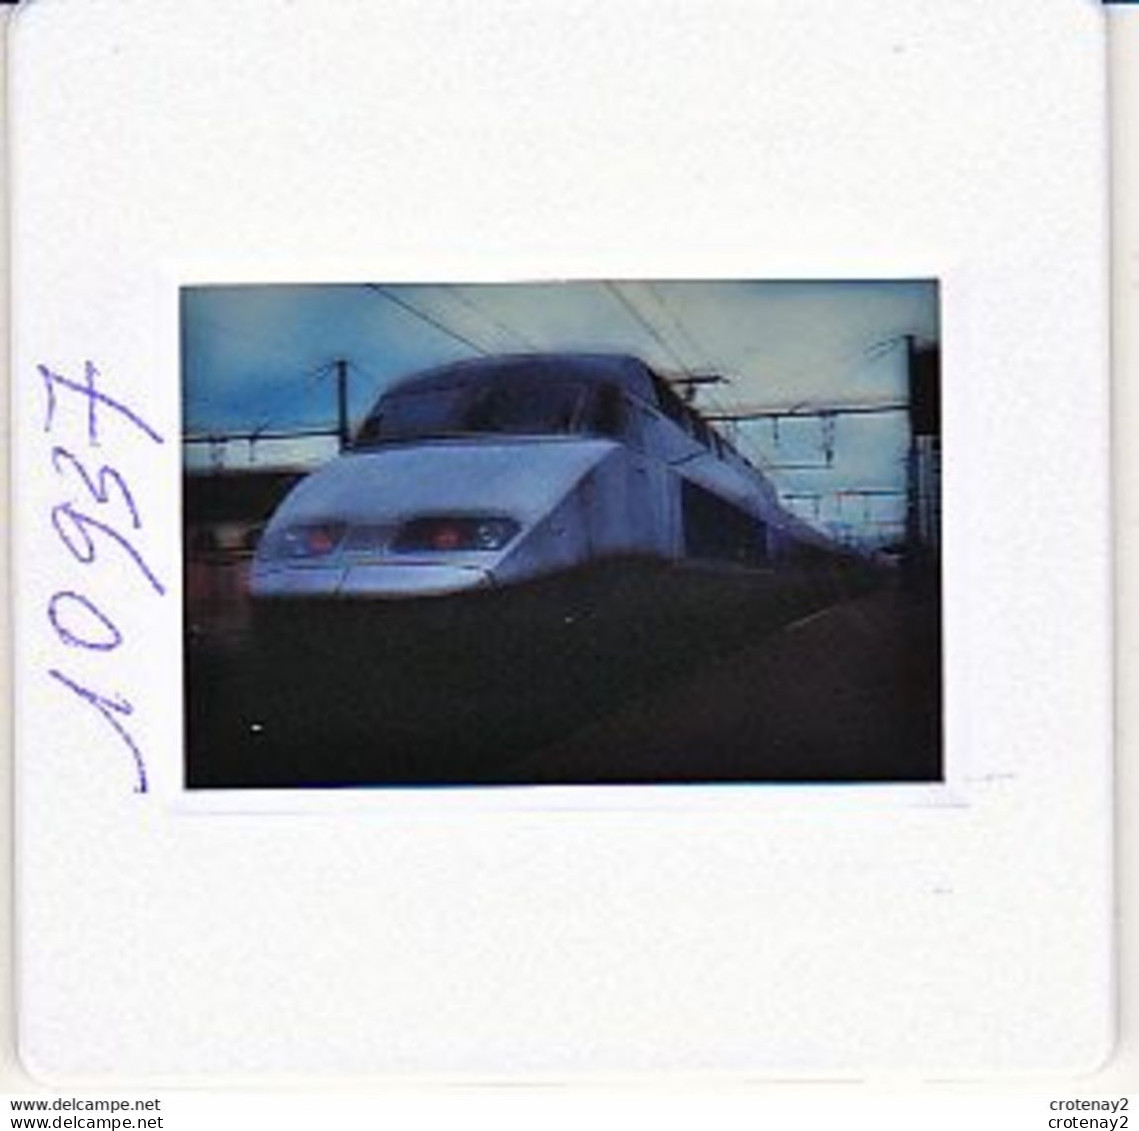 Photo Diapo Diapositive Slide Train Wagon Locomotive TGV SNCF Réseau 4501 à MONTARGIS Le 17/06/1993 VOIR ZOOM - Diapositives